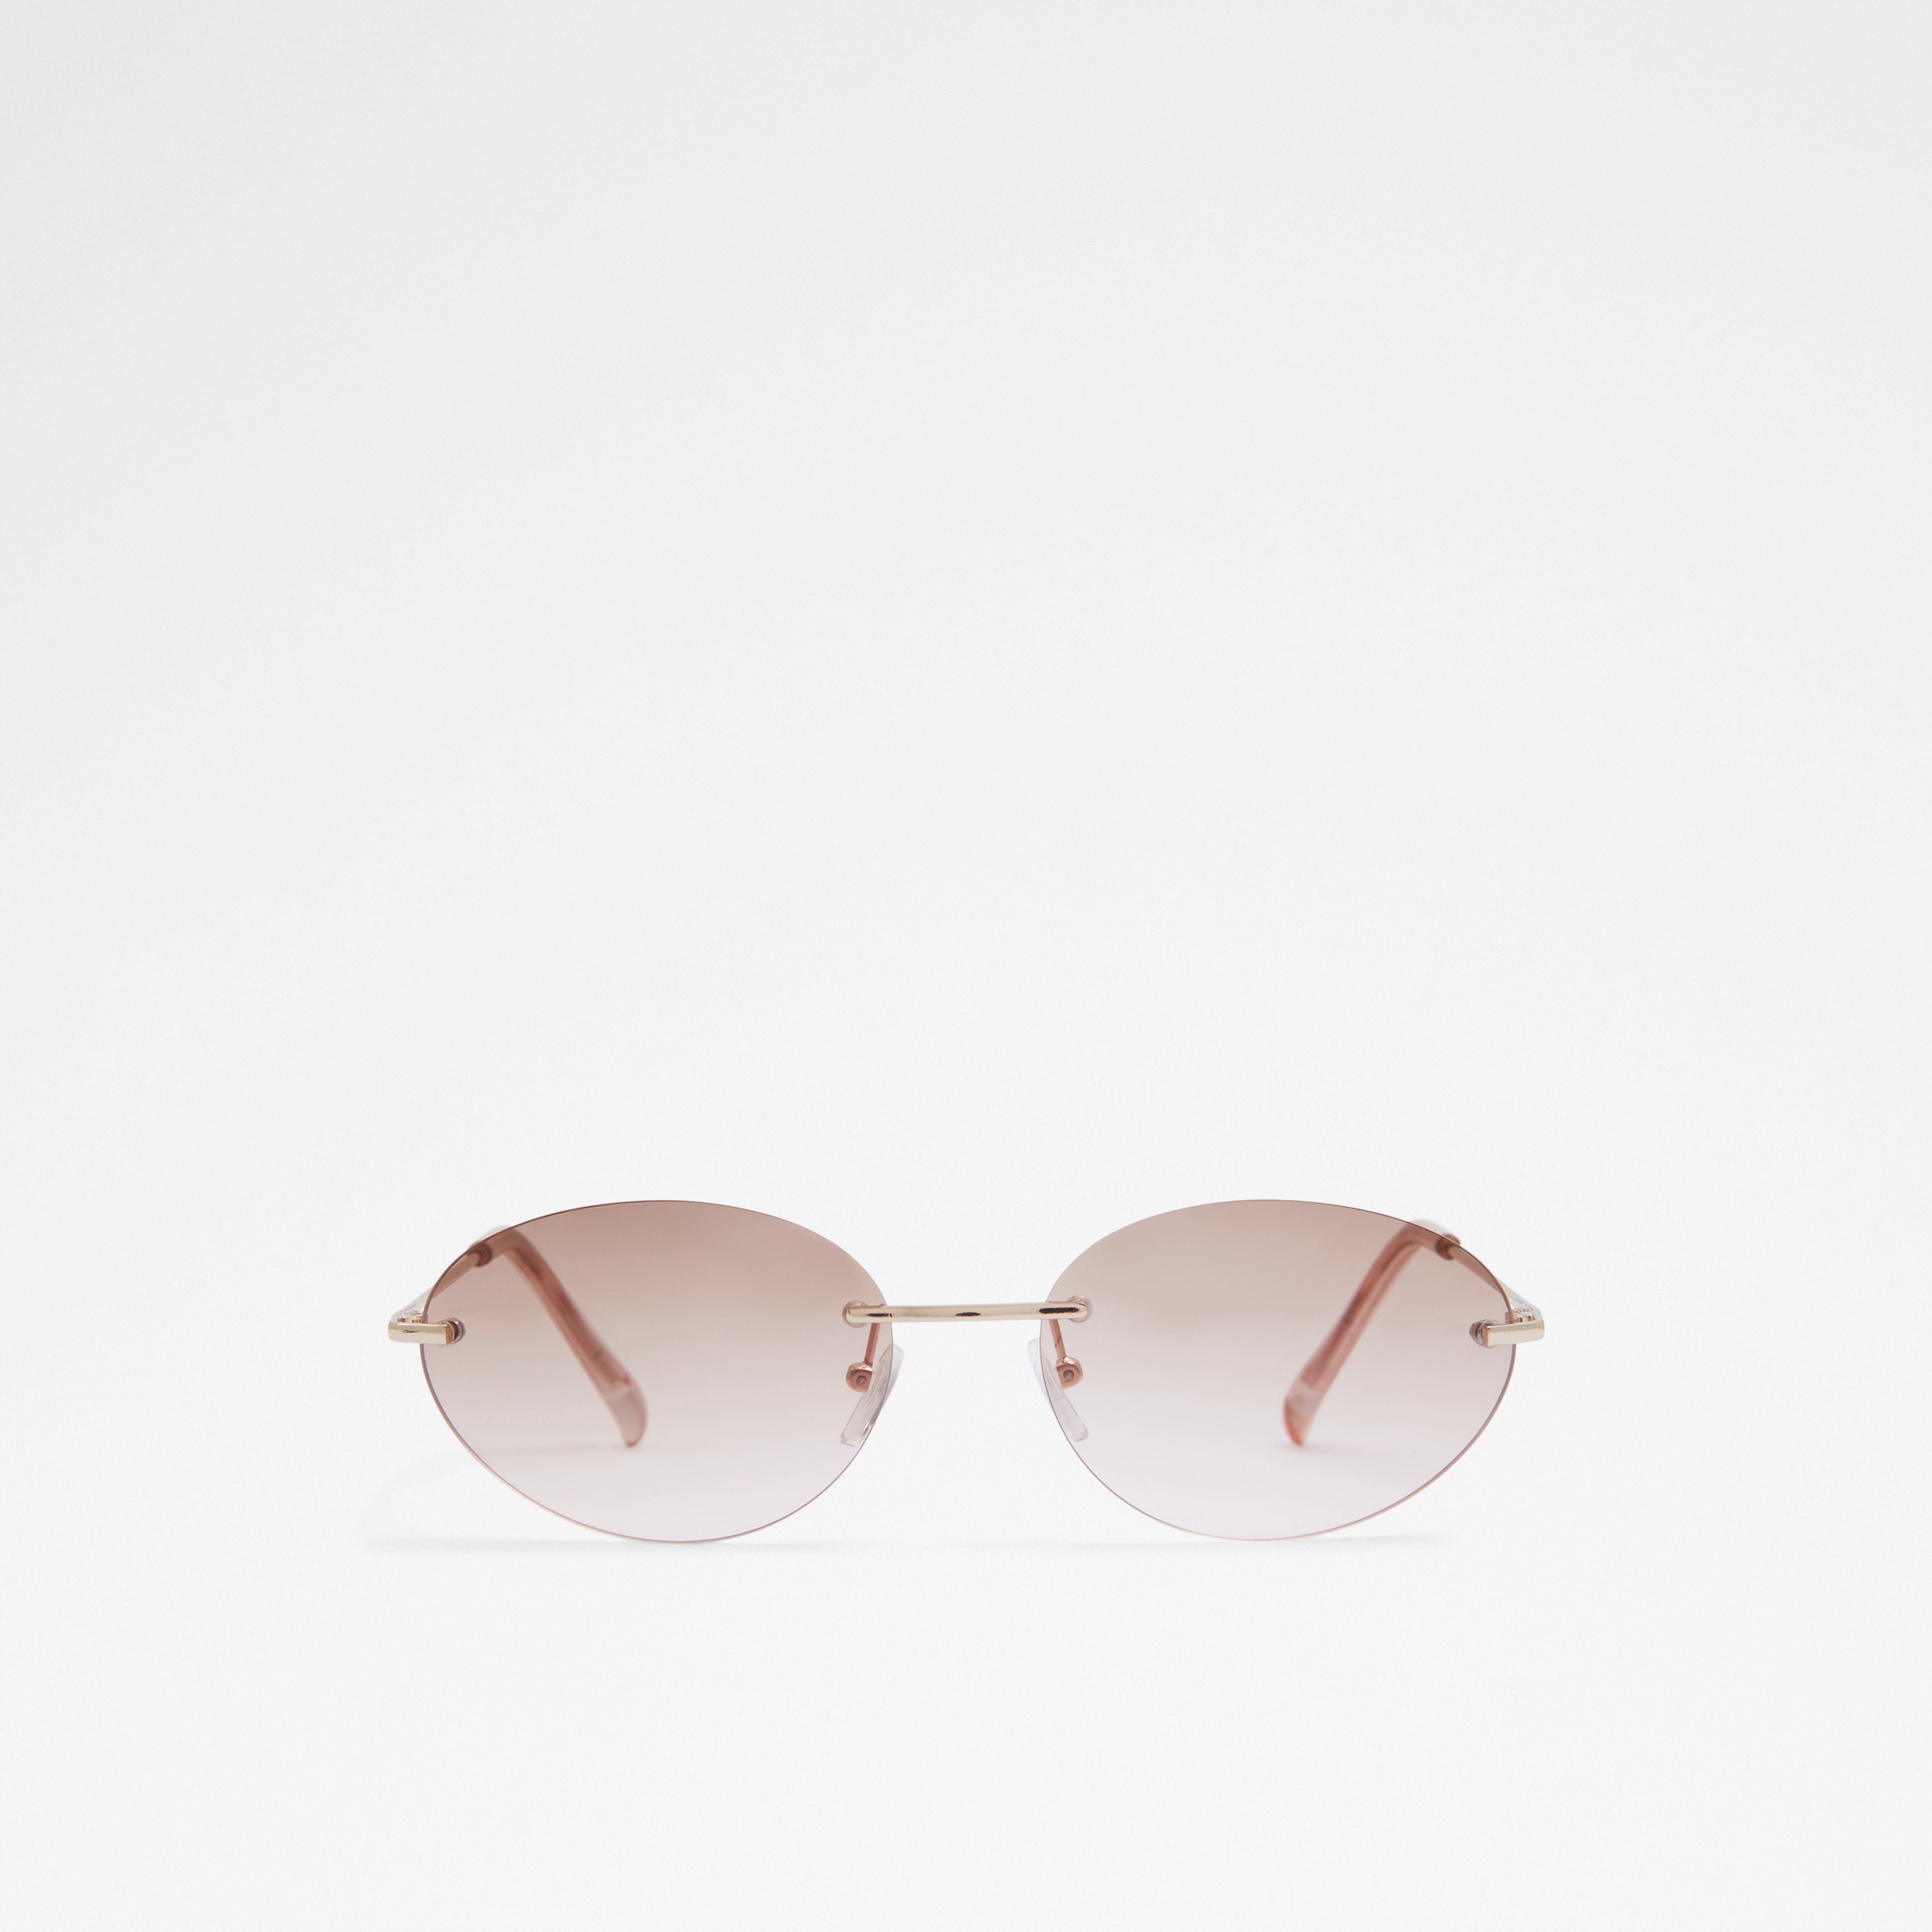 Aldo Seen Sunglasses - Ladies